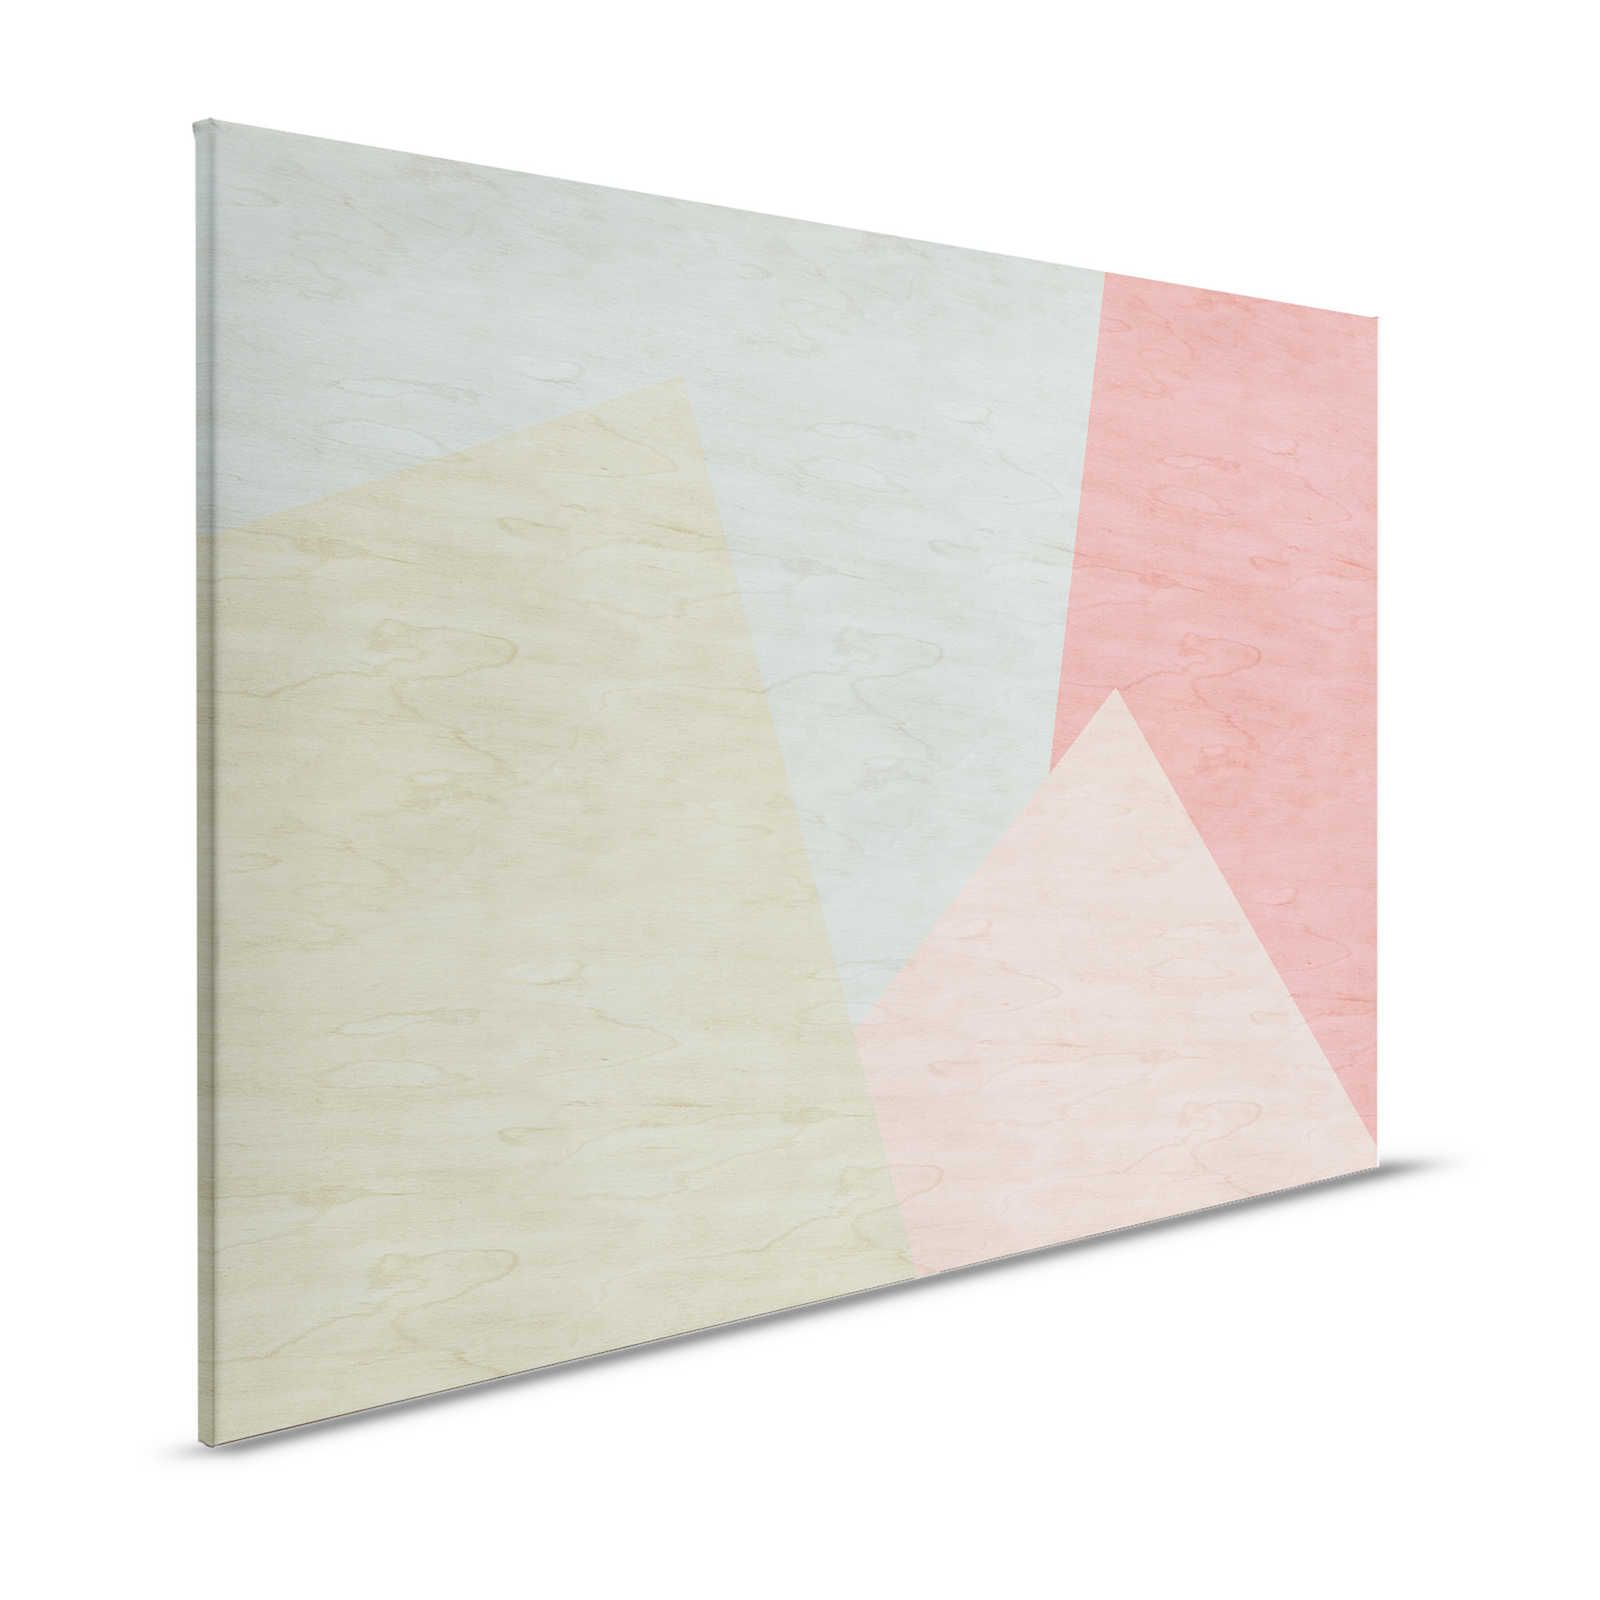 Inaly 2 - Toile abstraite multicolore aspect contreplaqué - 1,20 m x 0,80 m
